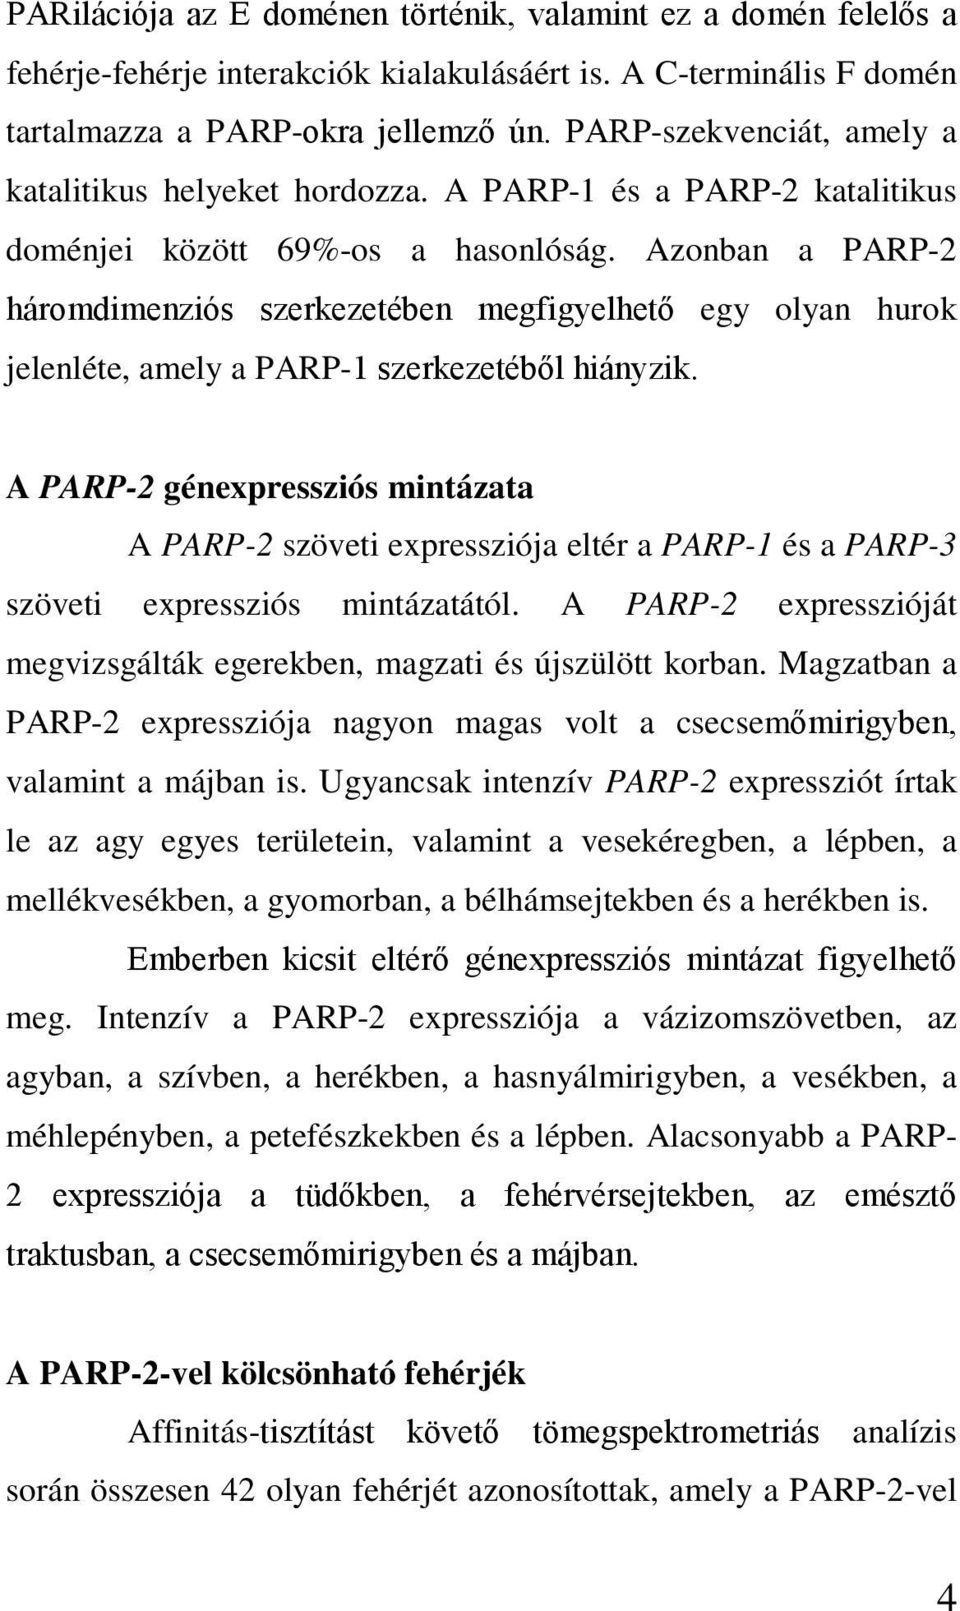 Azonban a PARP-2 háromdimenziós szerkezetében megfigyelhető egy olyan hurok jelenléte, amely a PARP-1 szerkezetéből hiányzik.